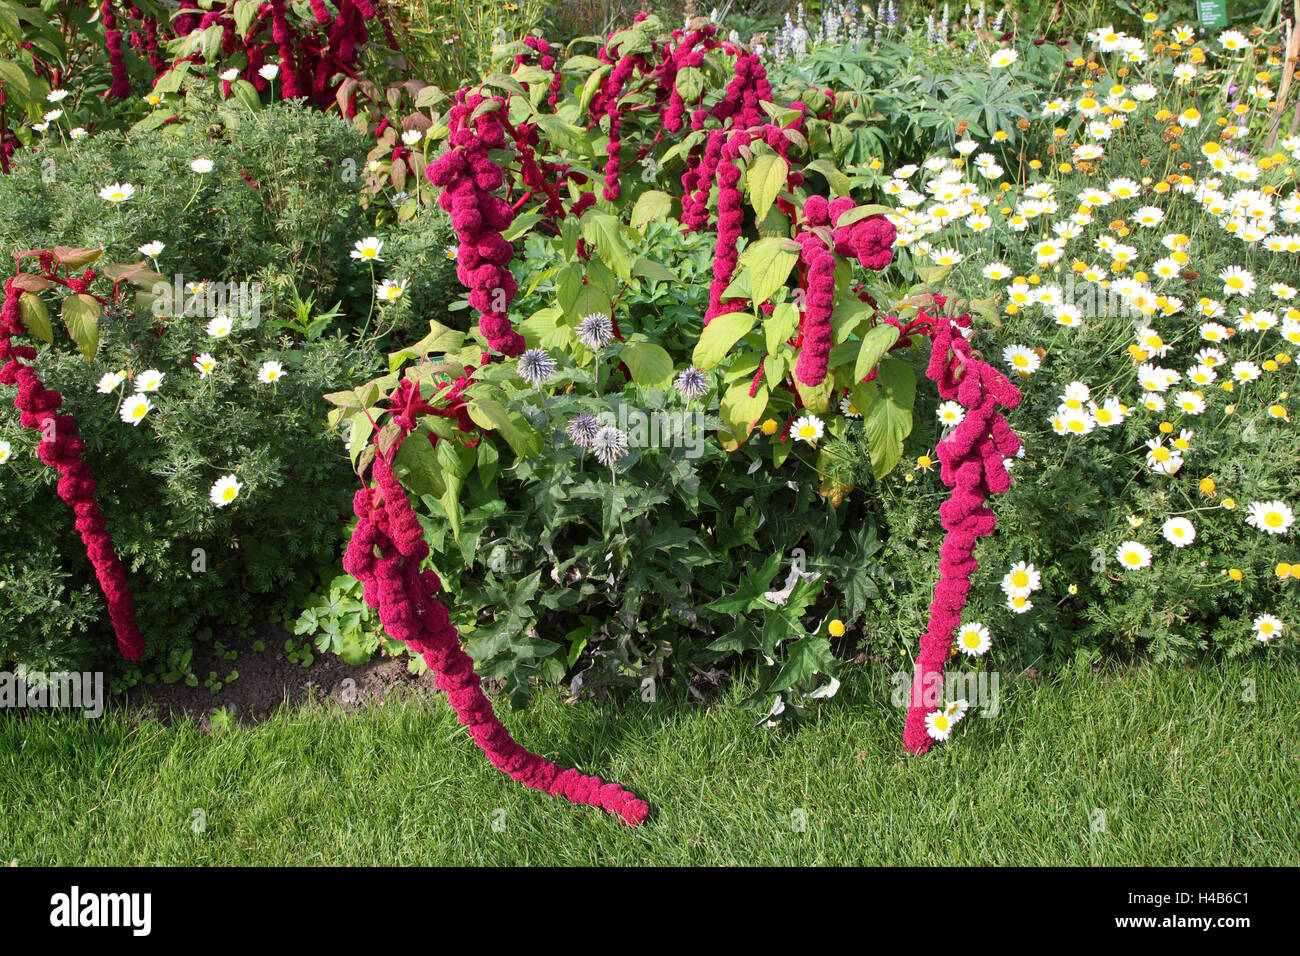 Garden, flowers, plants, panel saw 'pony Tails', Stock Photo